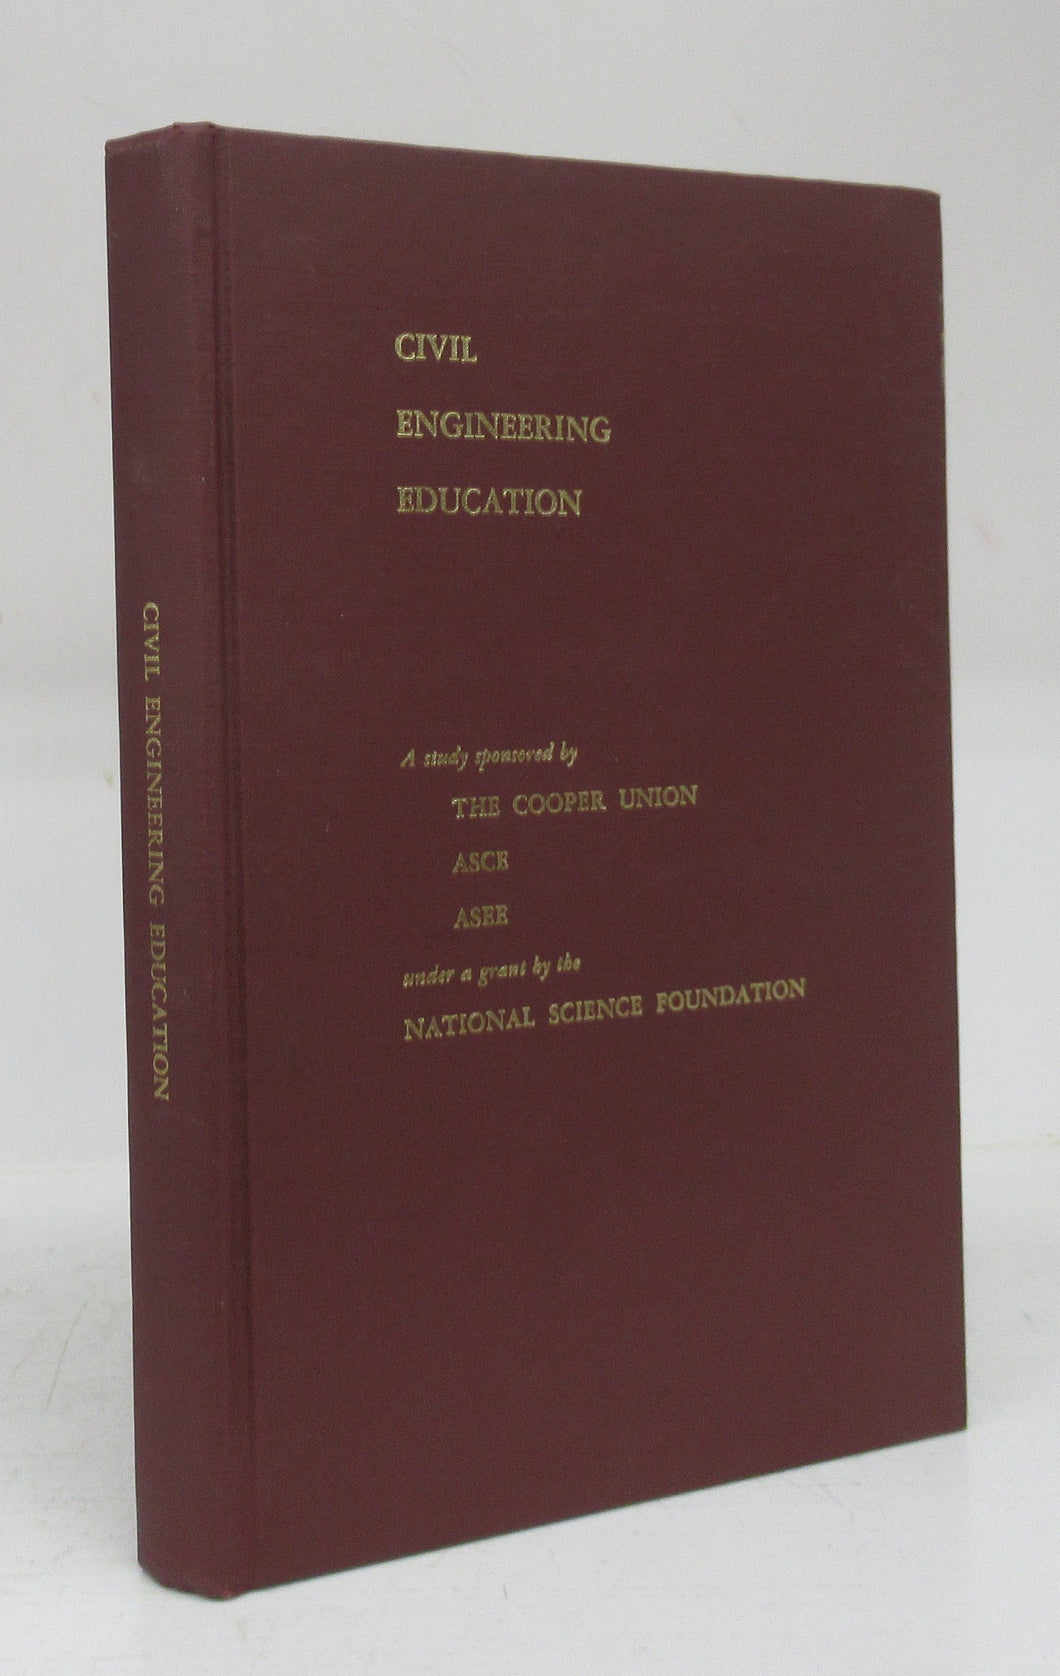 Civil Engineering Education